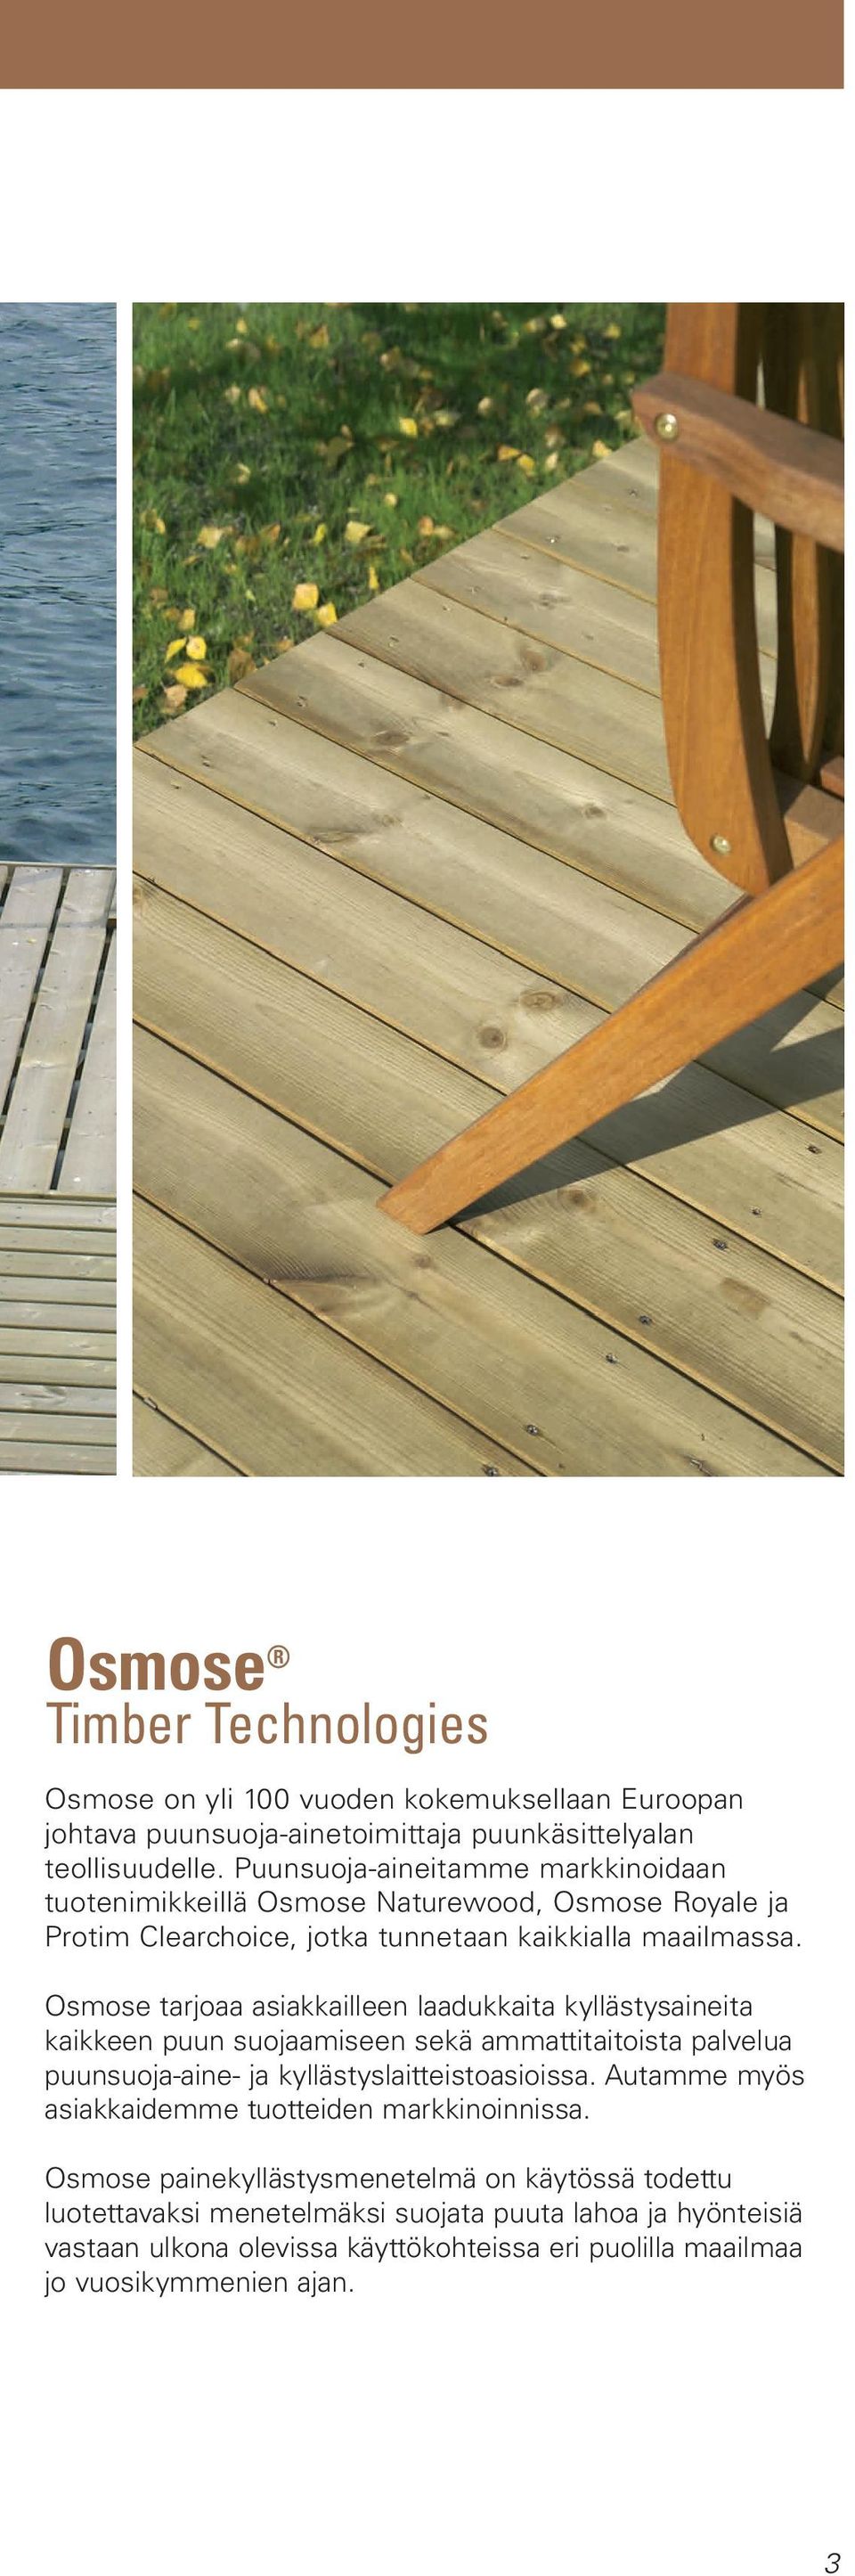 Osmose tarjoaa asiakkailleen laadukkaita kyllästysaineita kaikkeen puun suojaamiseen sekä ammattitaitoista palvelua puunsuoja-aine- ja kyllästyslaitteistoasioissa.